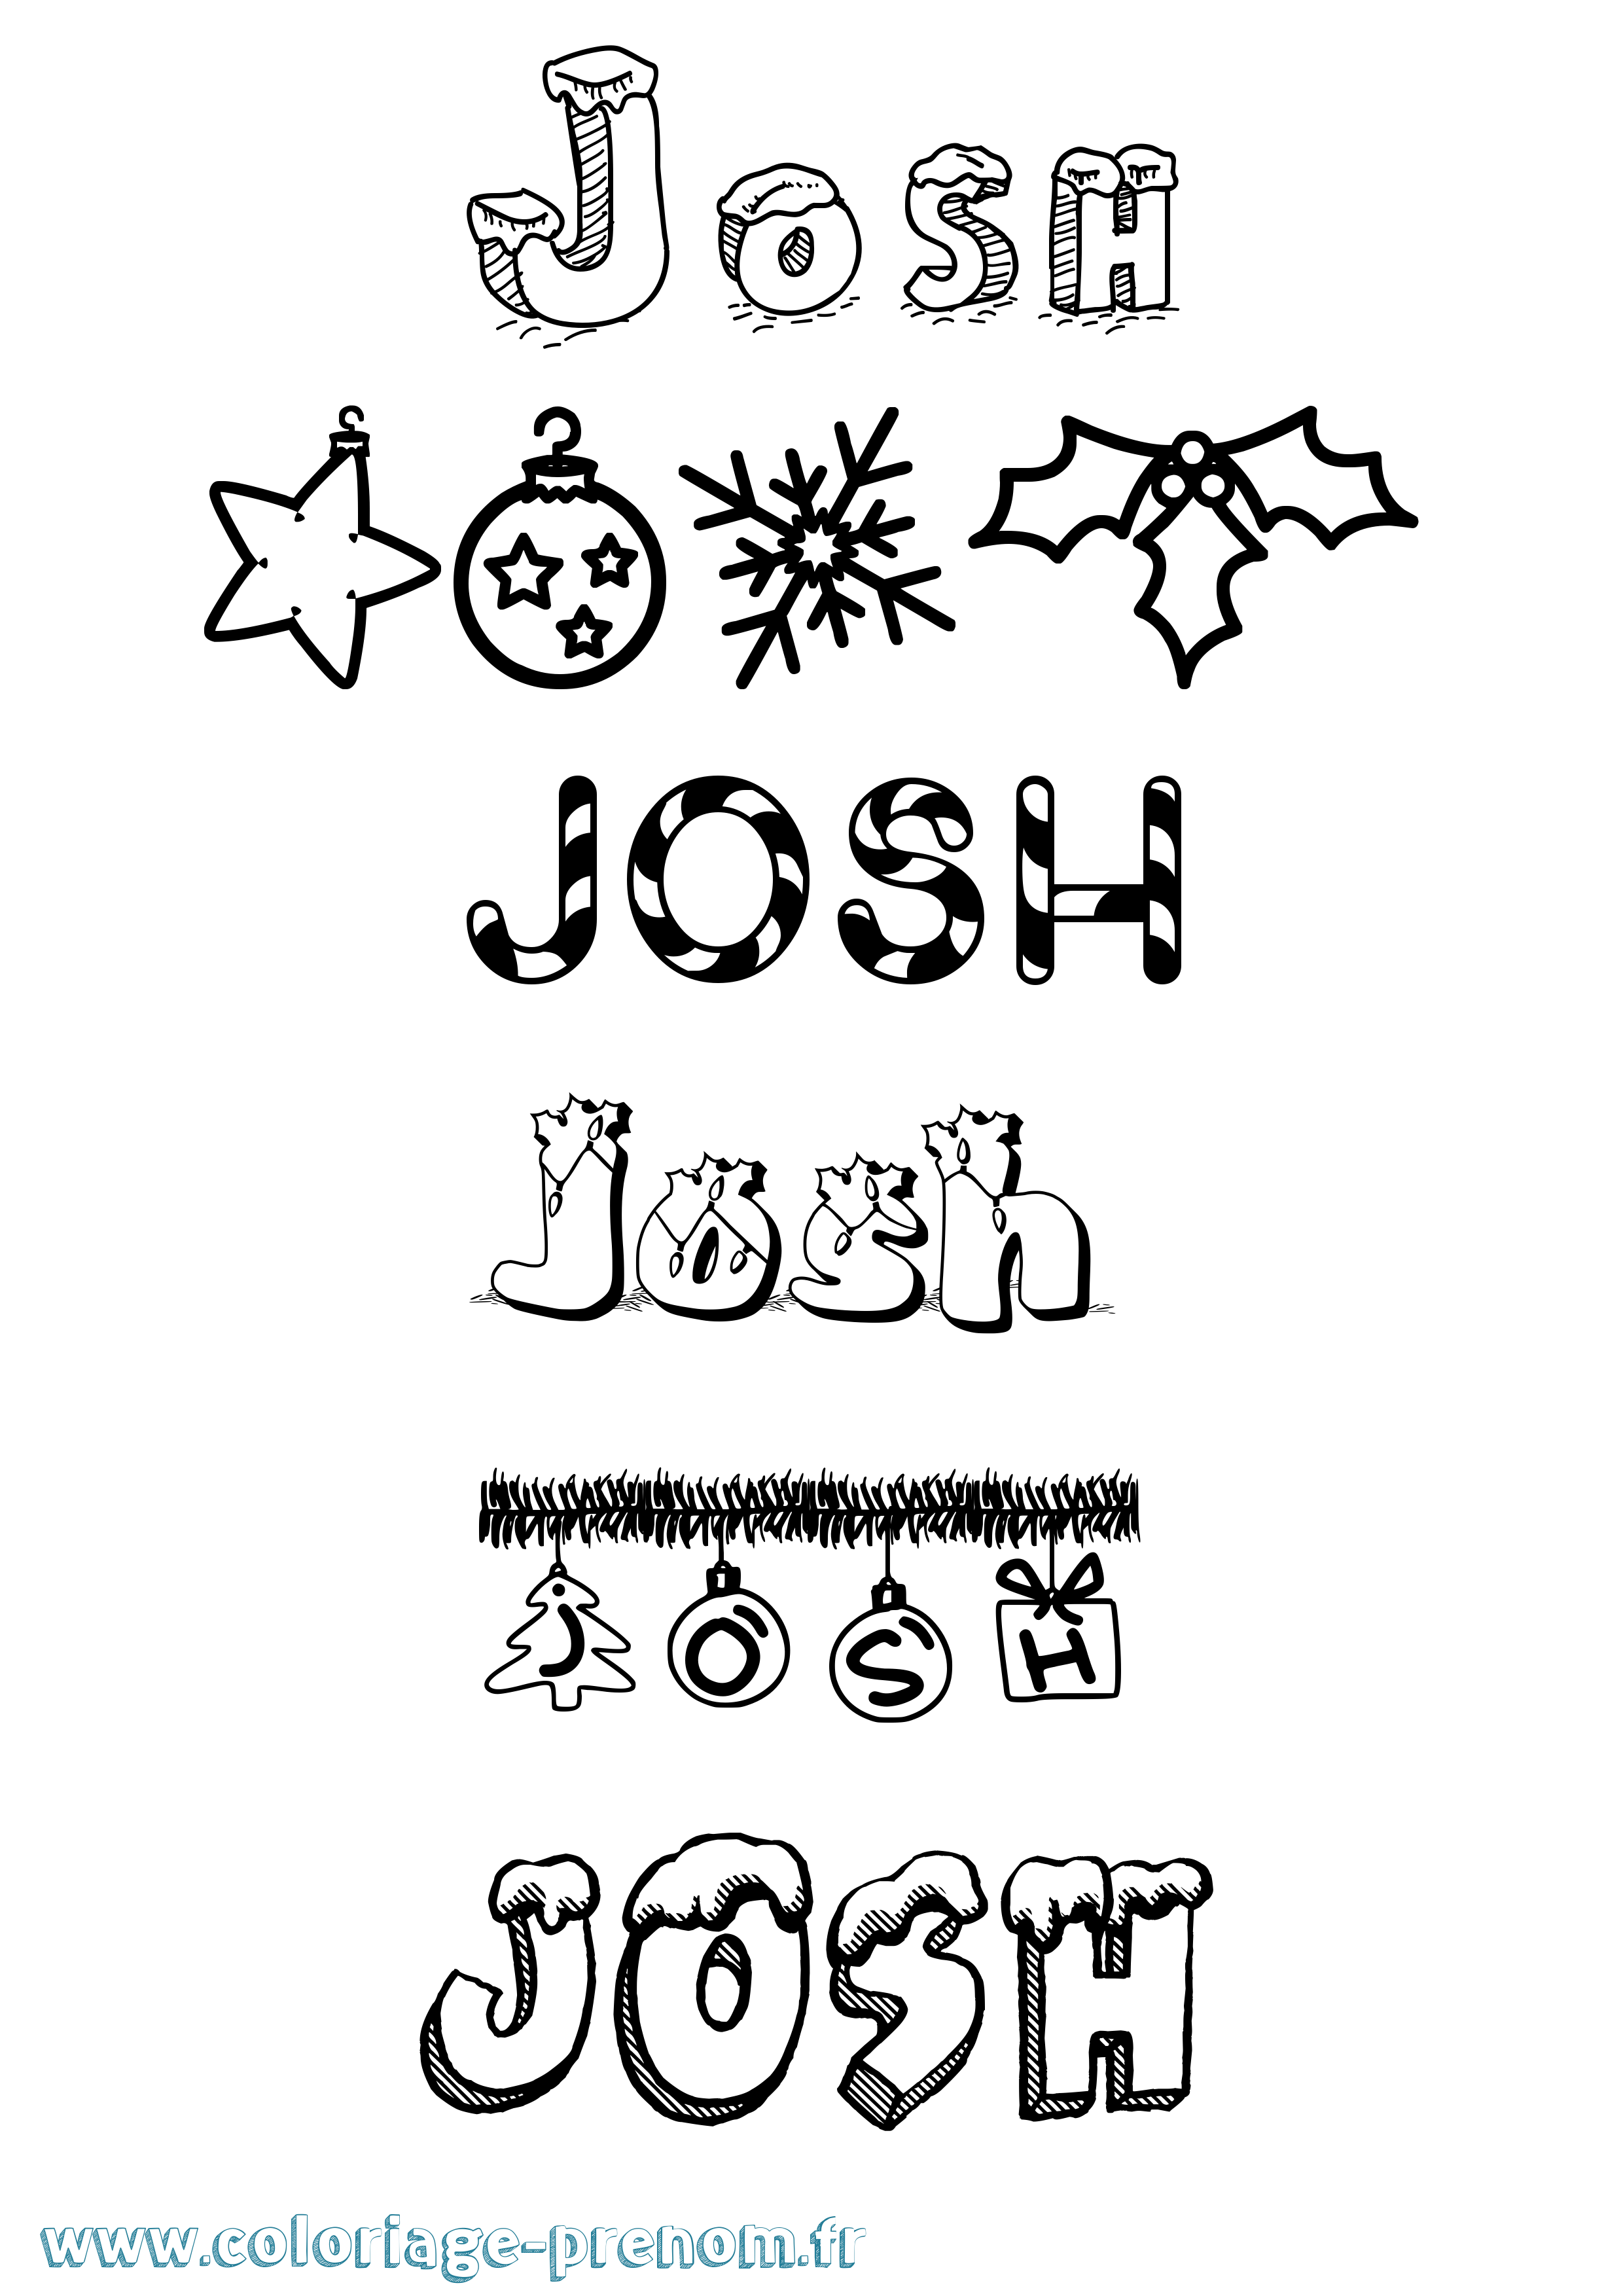 Coloriage prénom Josh Noël